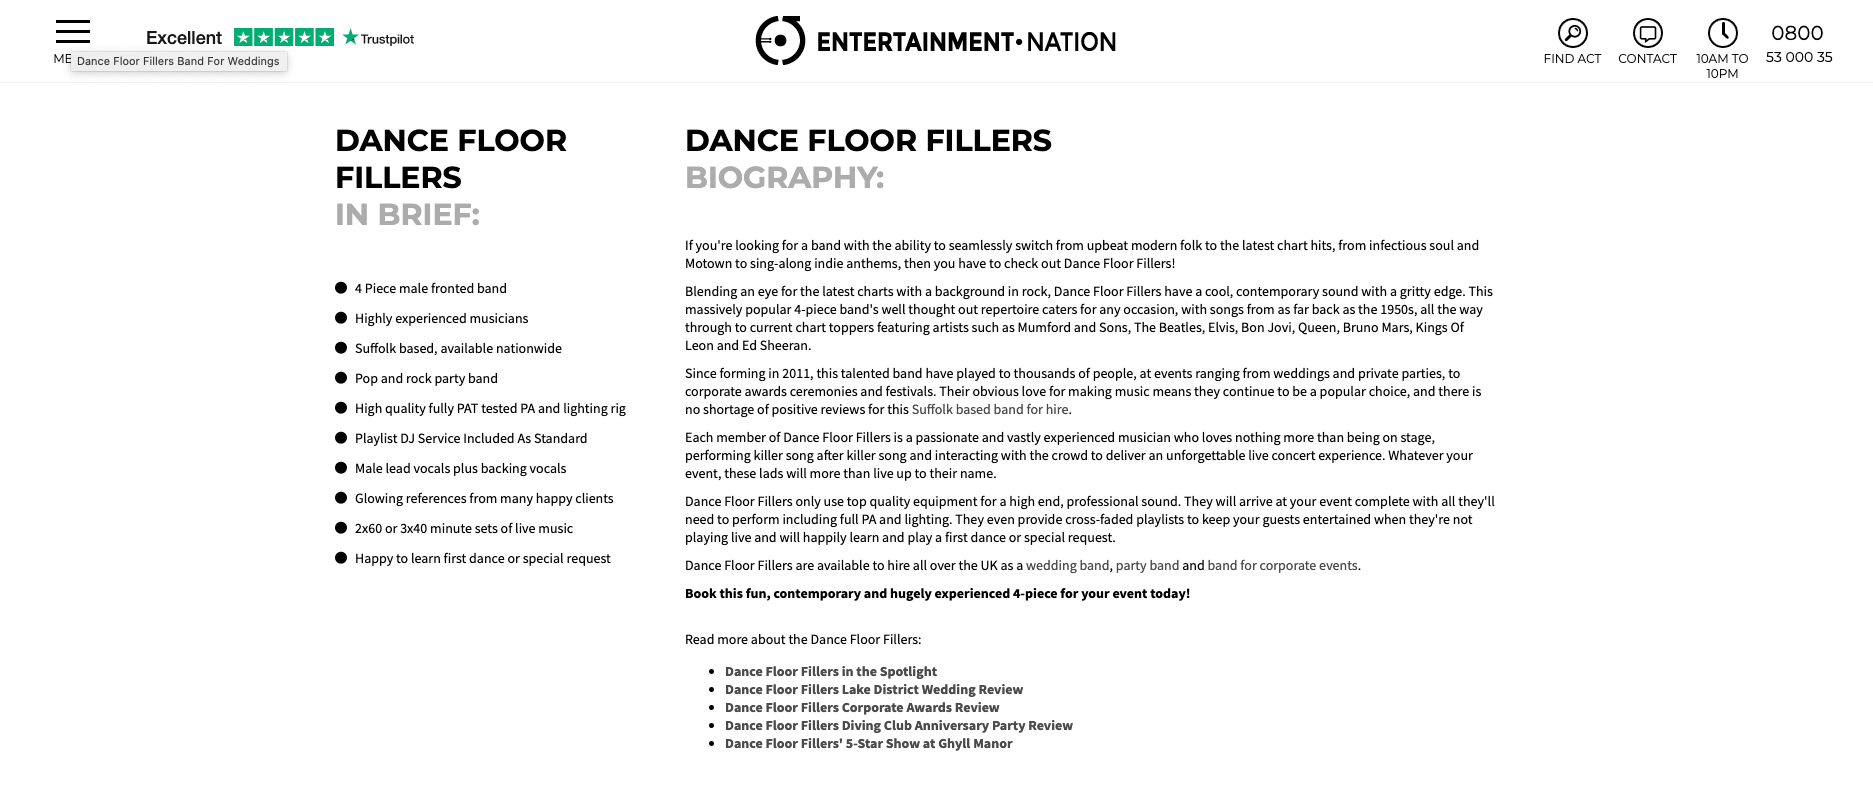 Dance Floor Fillers Biography